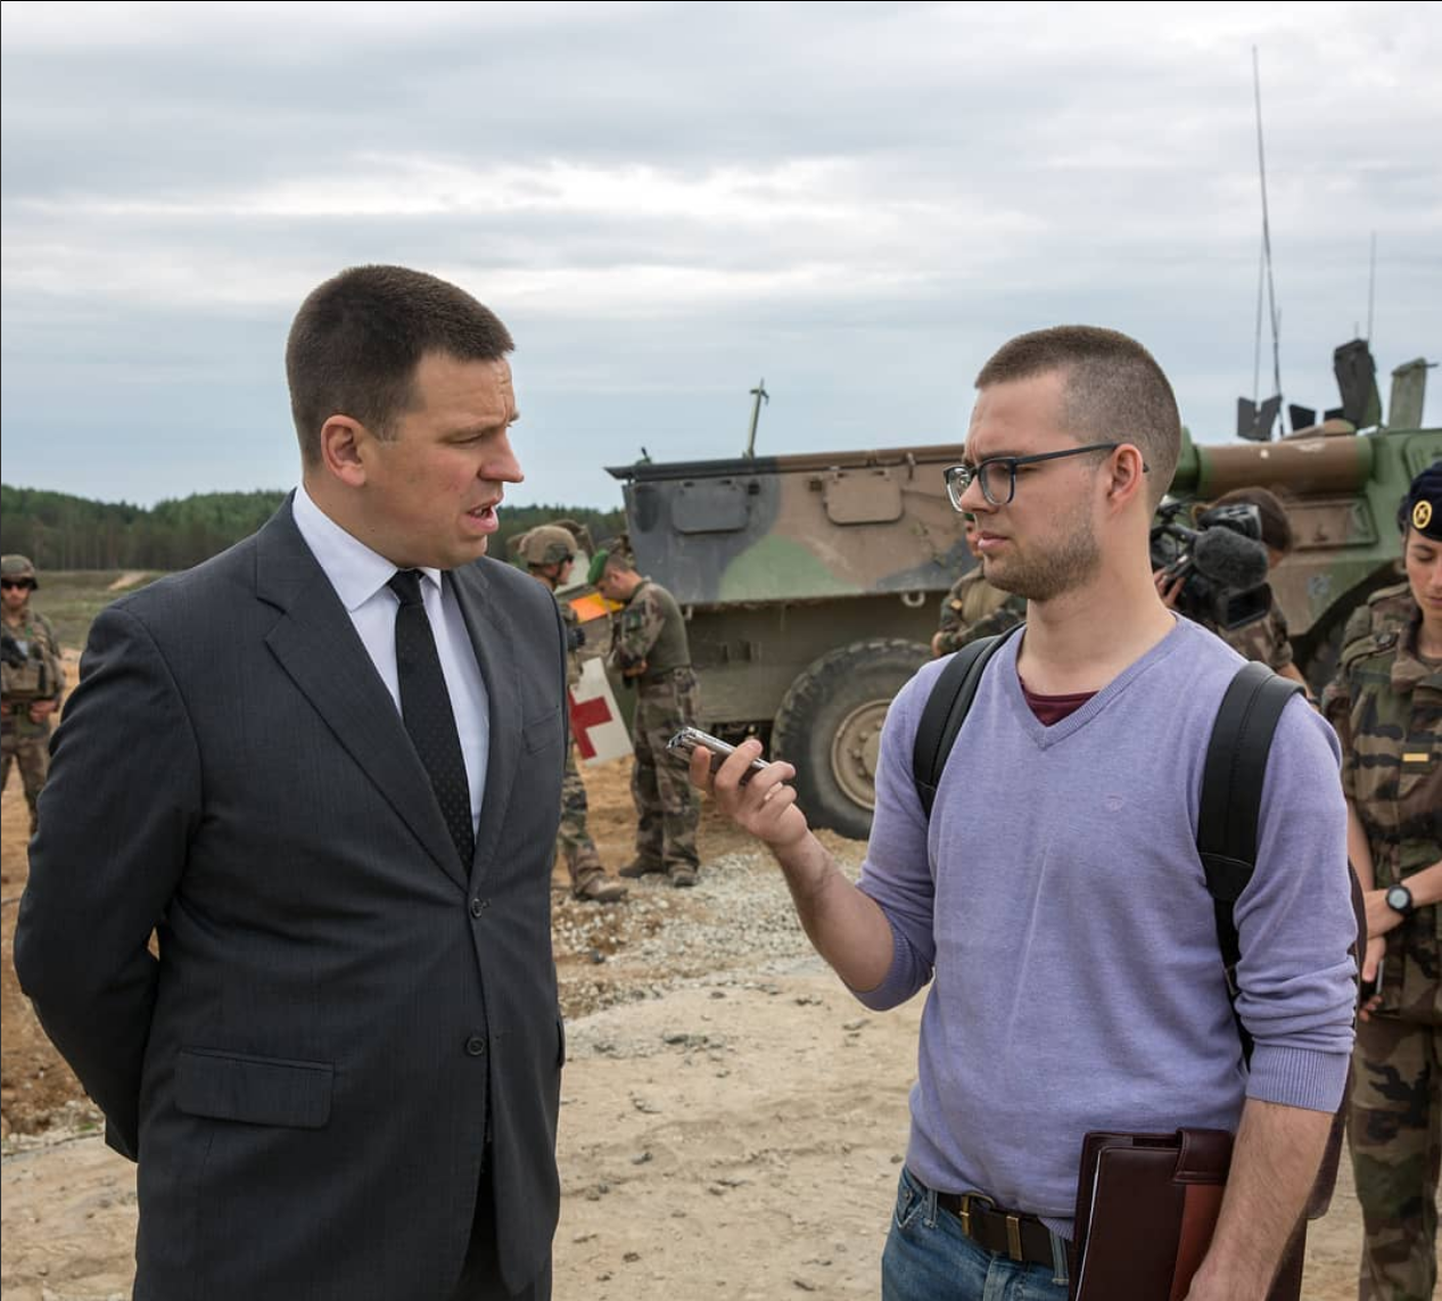 Toonane peaminister Jüri Ratas oskas tehnika- ja sõjandushuvilisena mulle väga huvitavaid vastuseid anda.